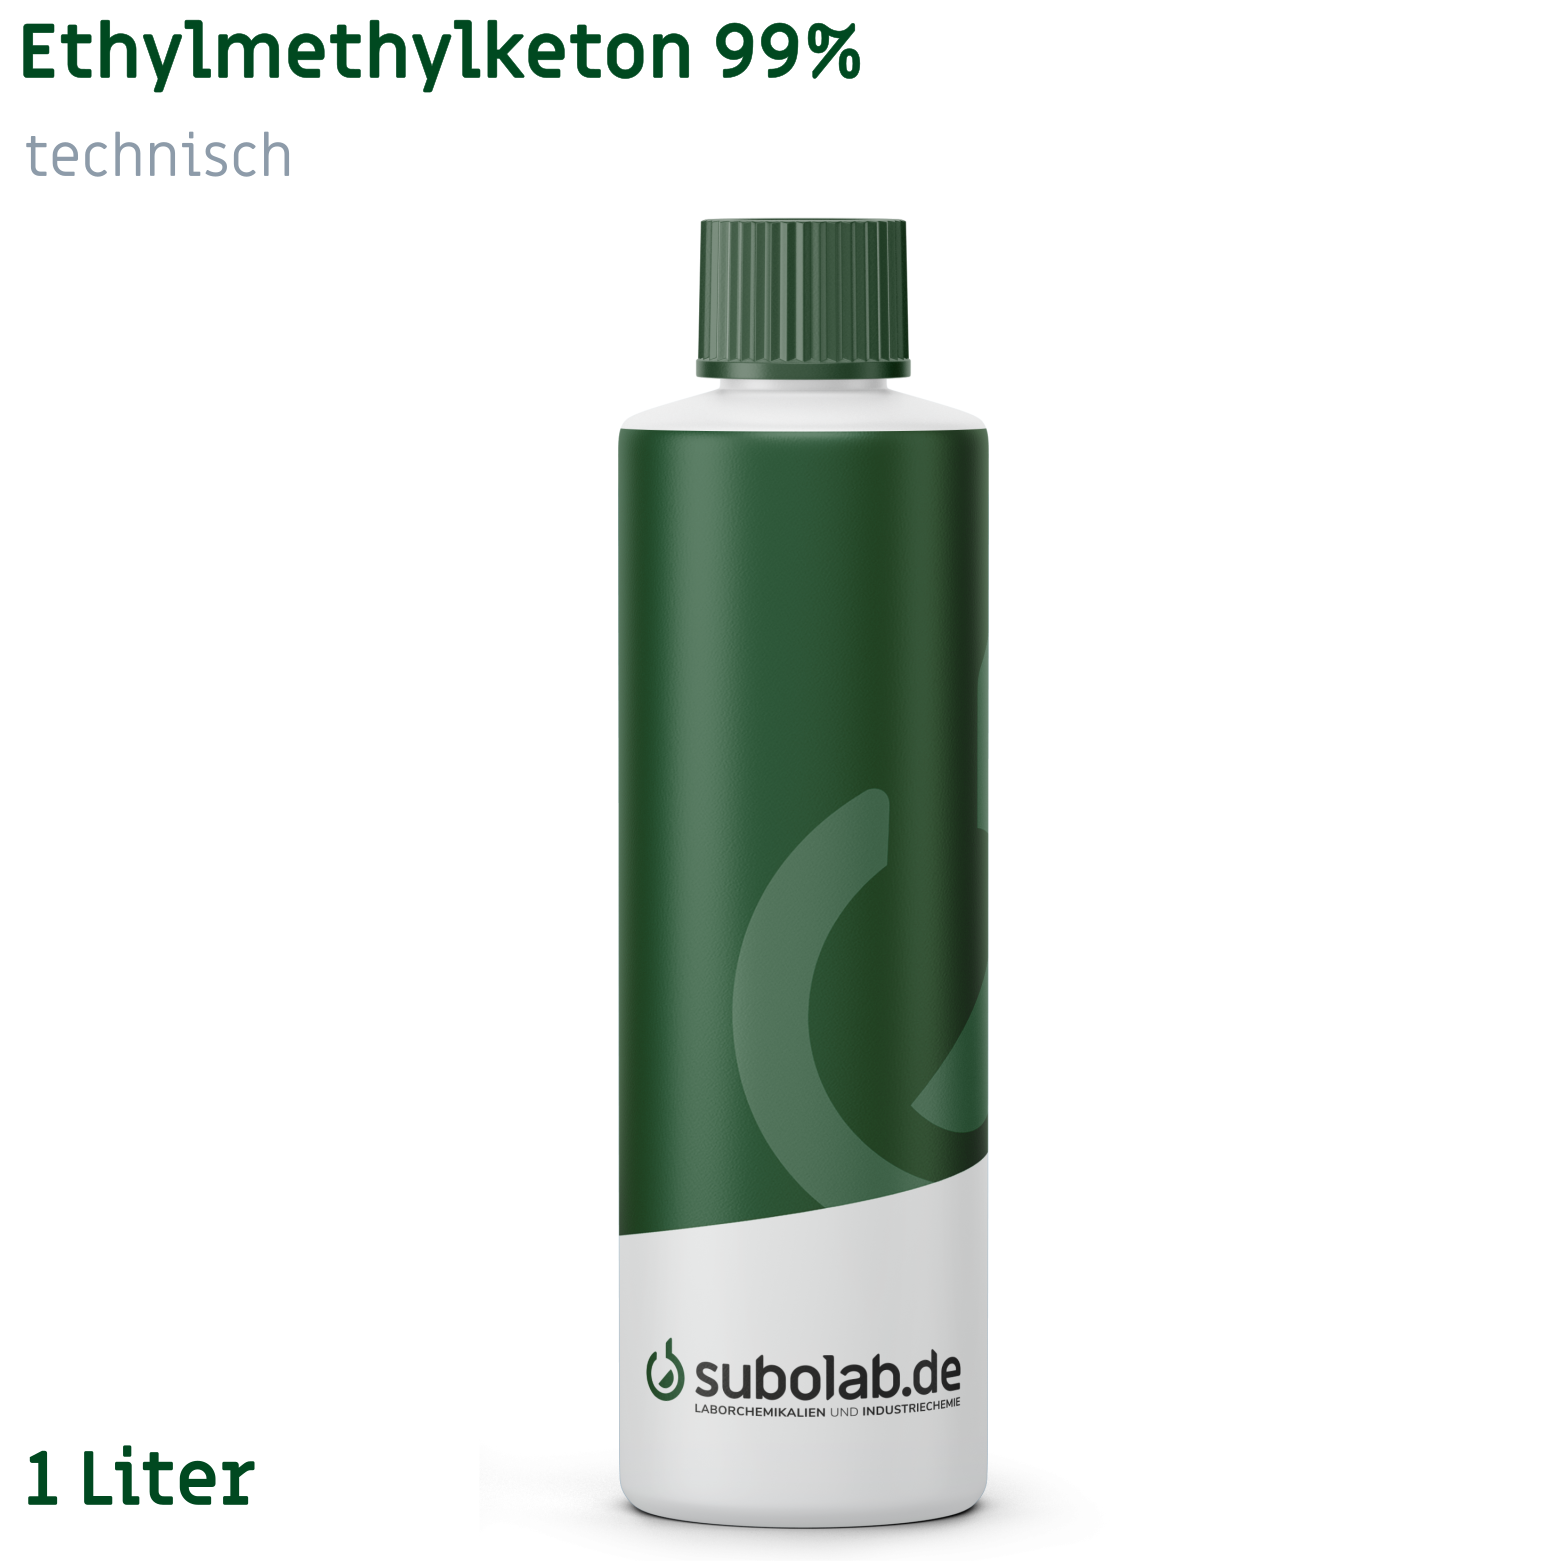 Bild von Ethylmethylketon 99% technisch (1 Liter)